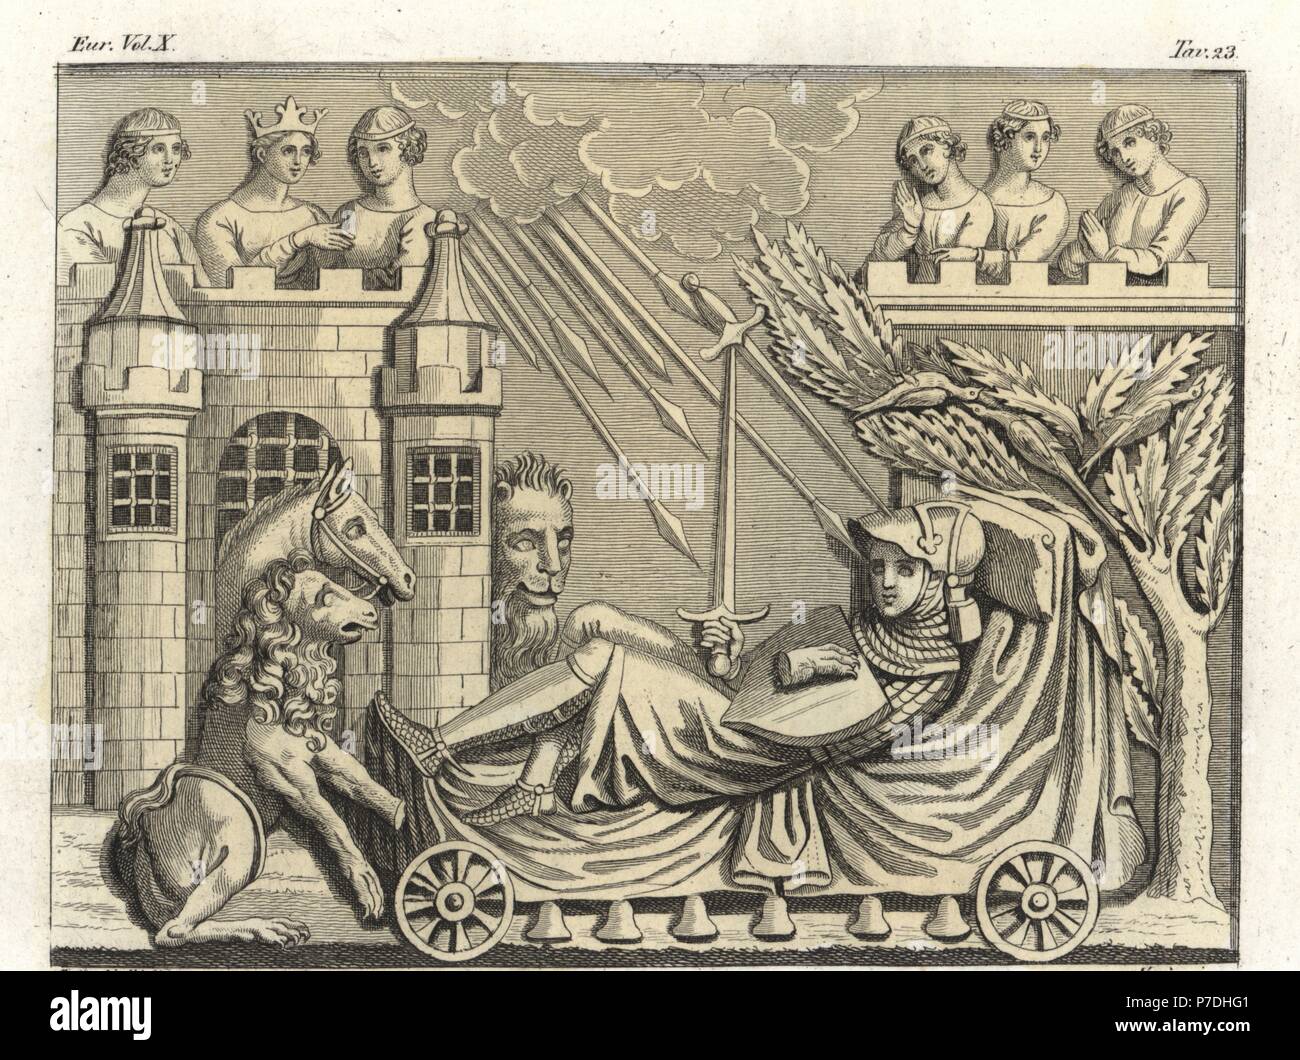 Premier bas-relief d'un sarcophage du 12e siècle : le rêve d'un chevalier  de dormir sur un lit à roulettes et les cloches sous un château rempart  avec la reine et les dames,